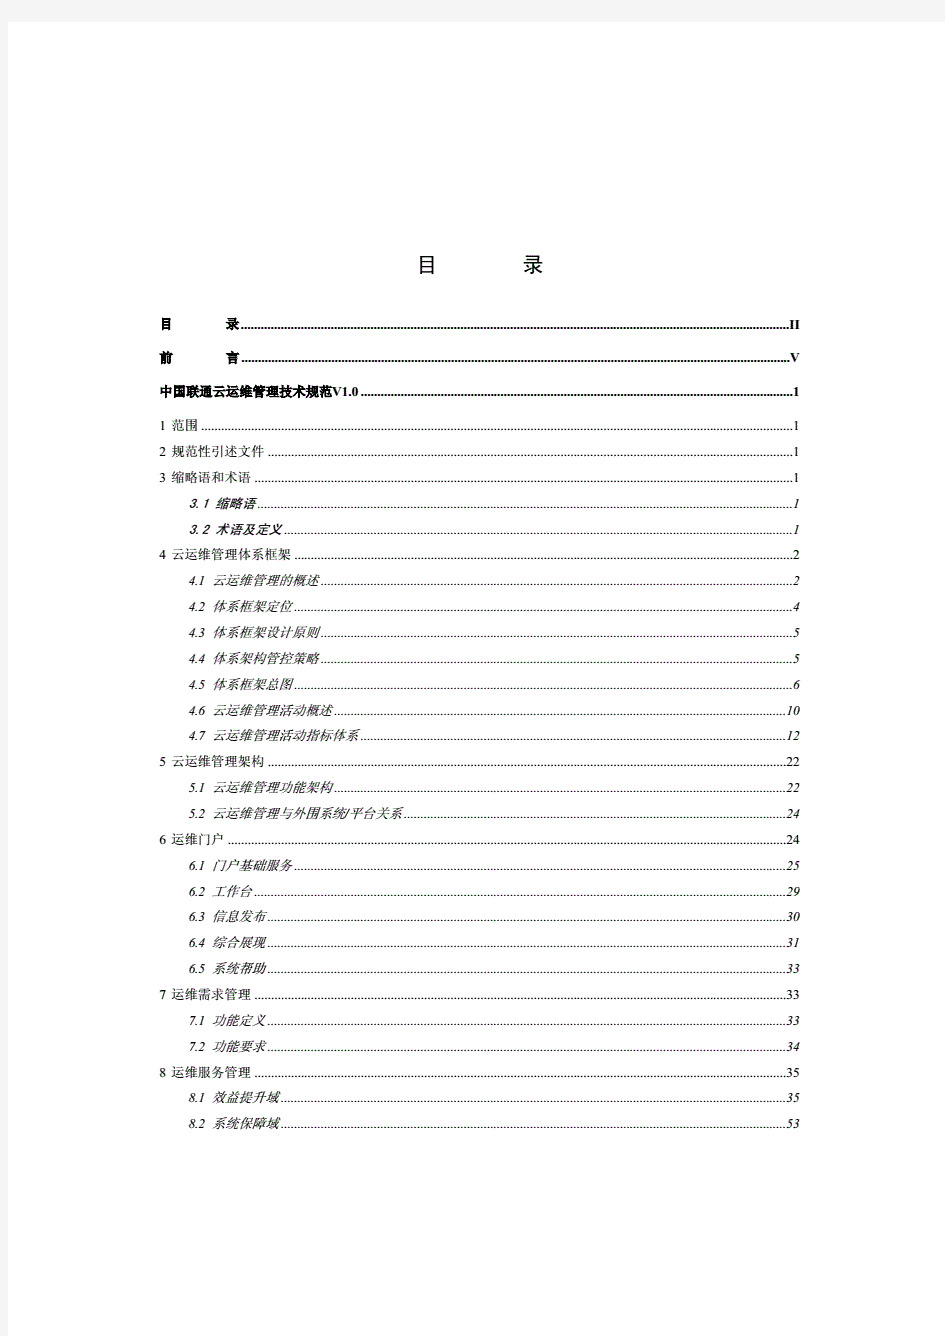 中国联通云运维管理技术规范v1.10(去年写)